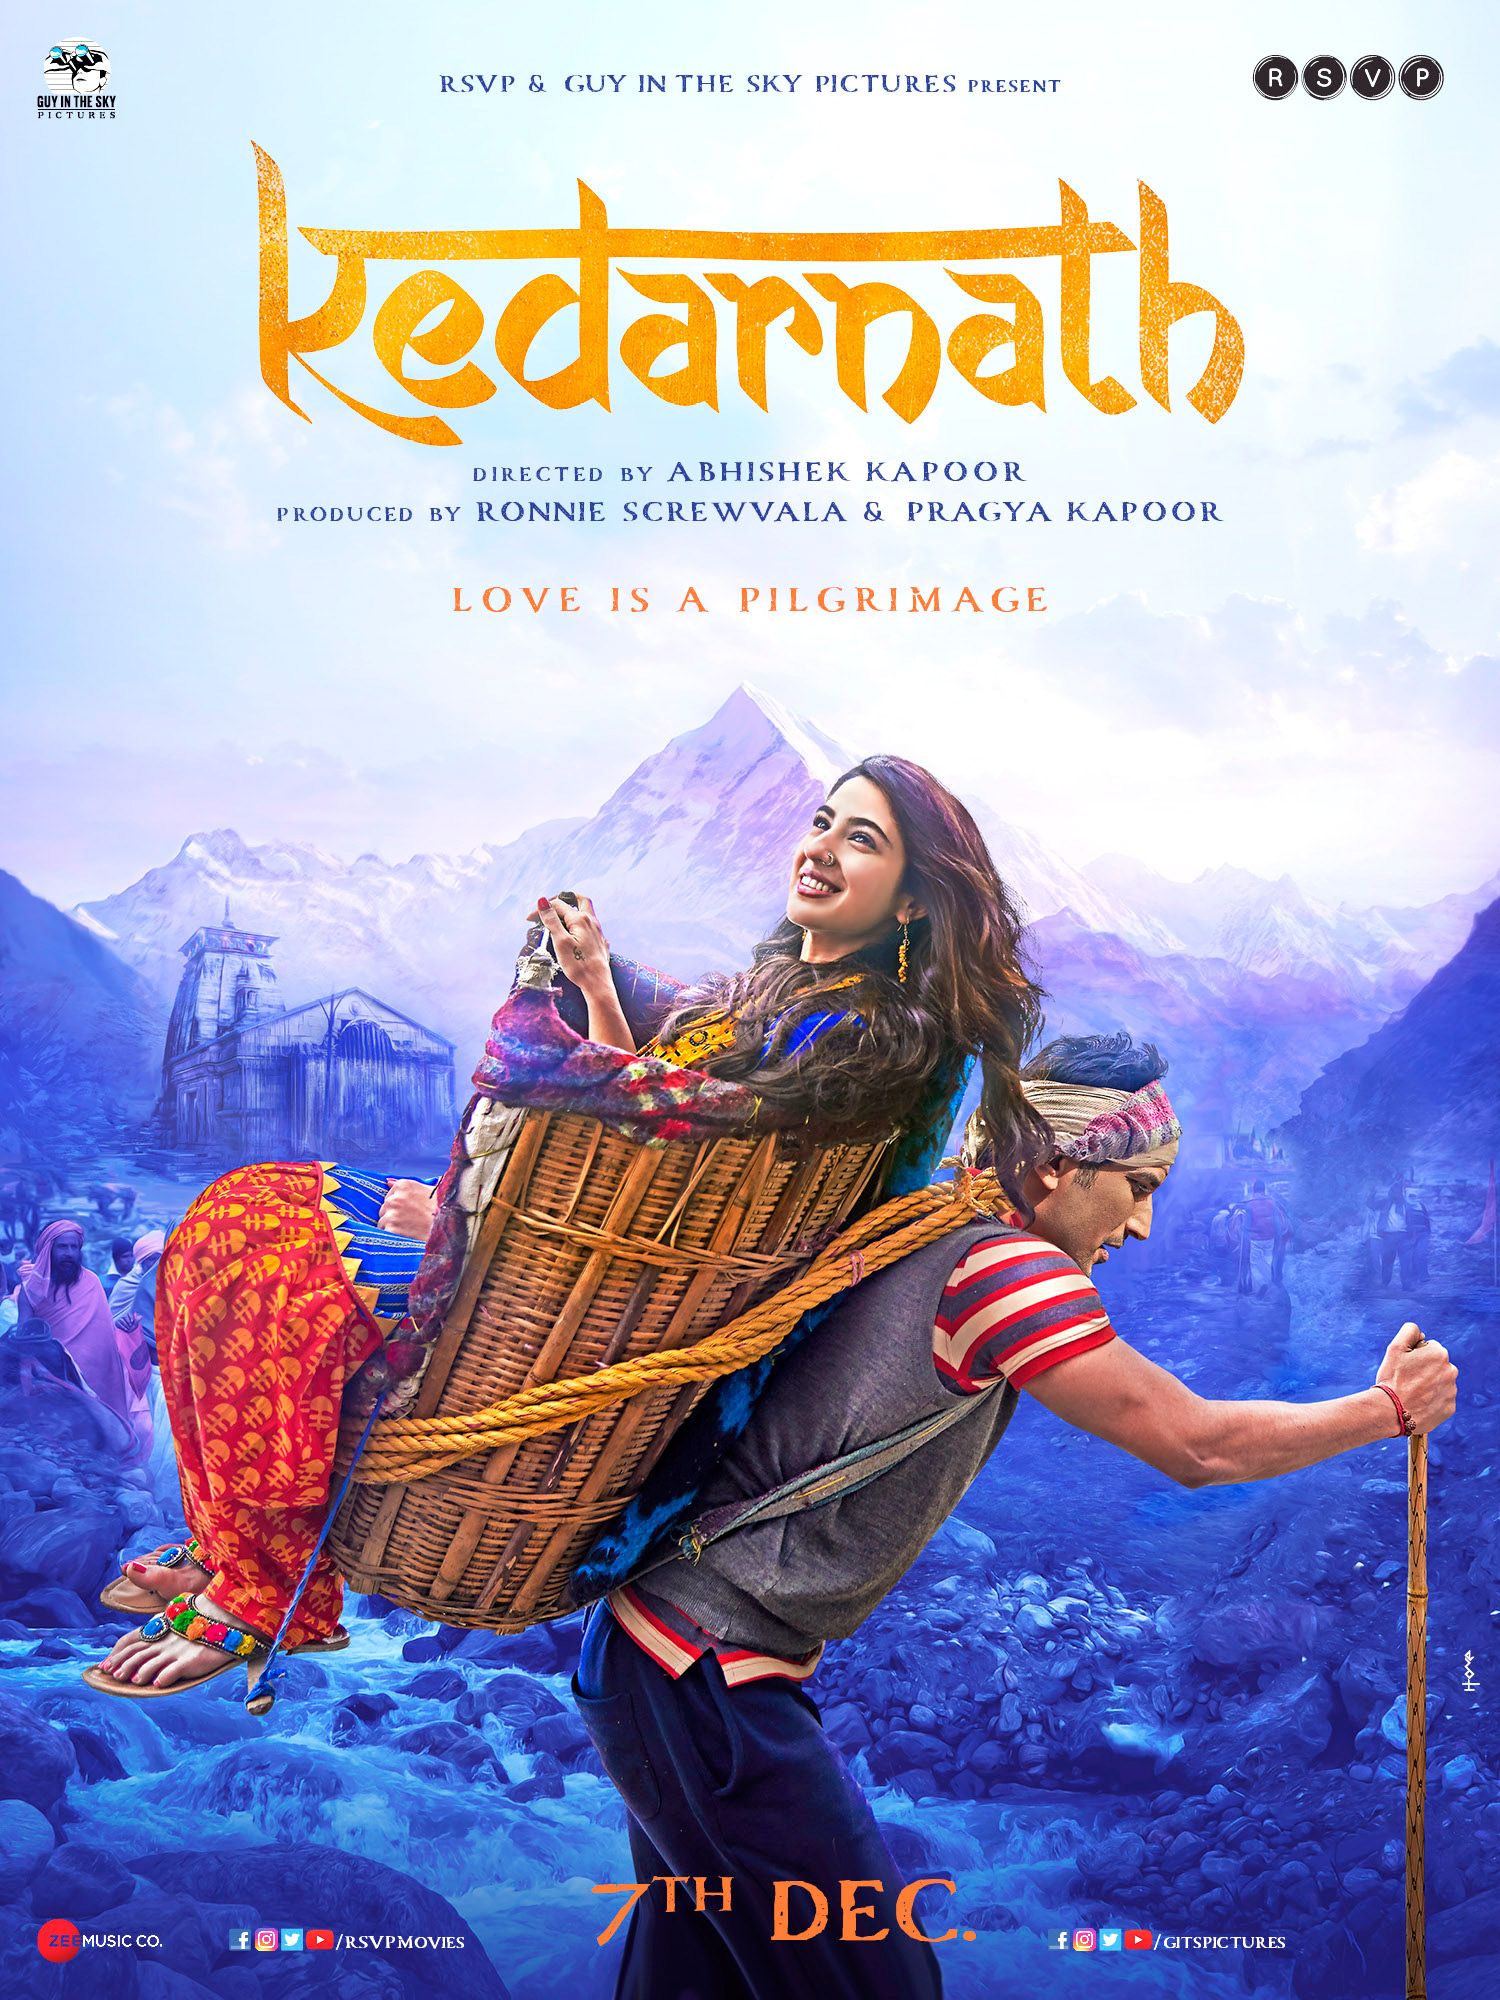 kedarnath movie download coolmoviez